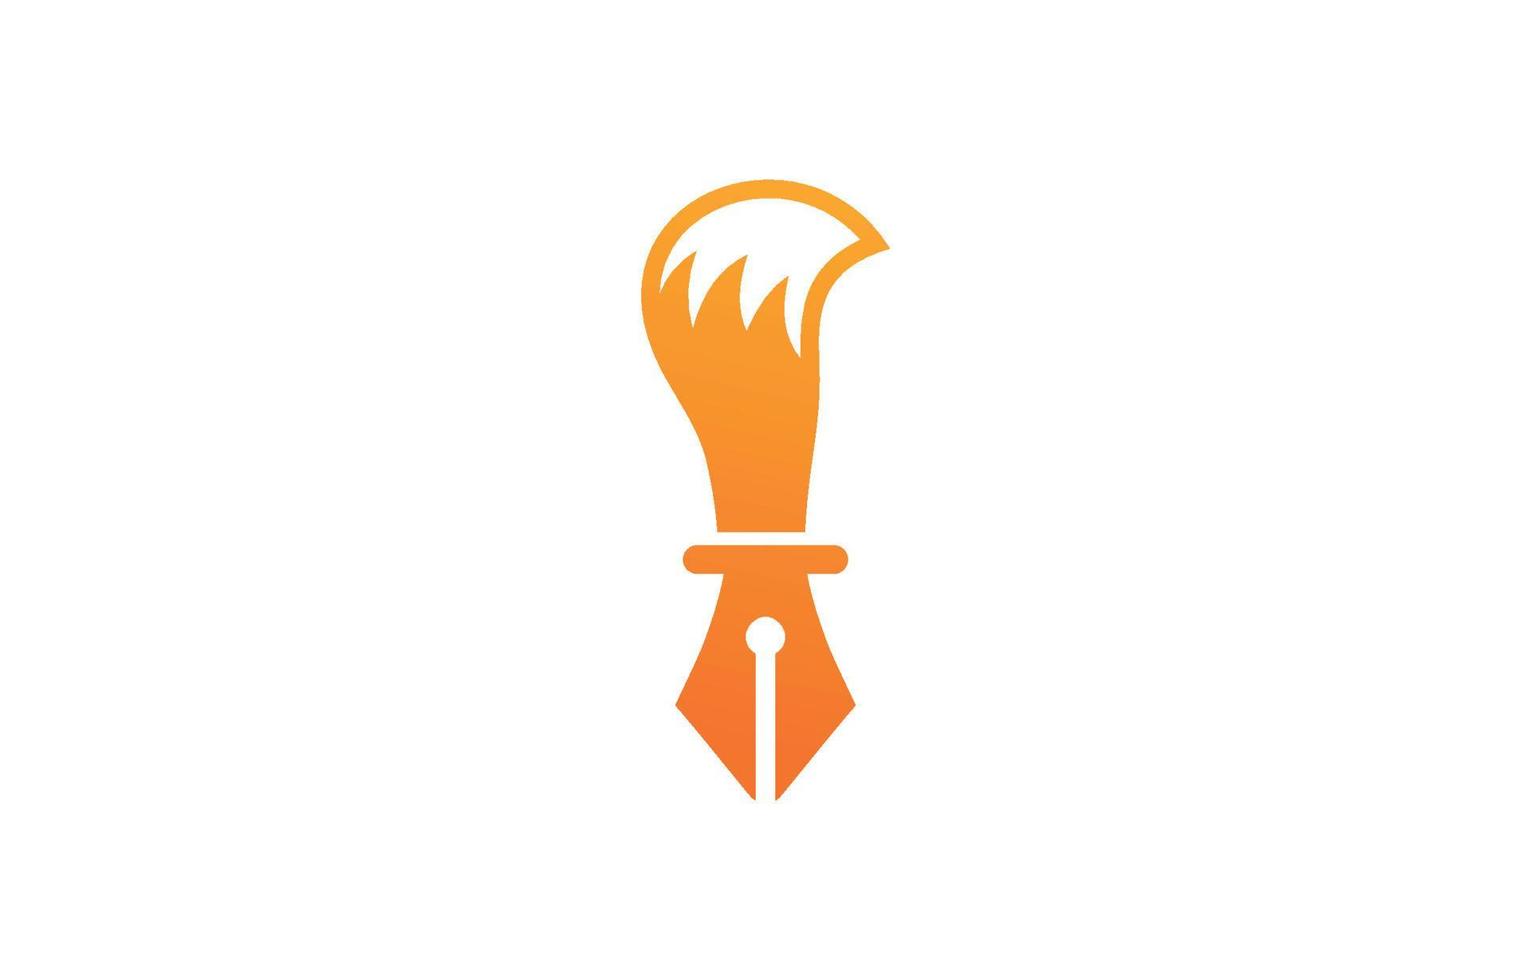 stylo renard résumé logo vecteur entreprise entreprise